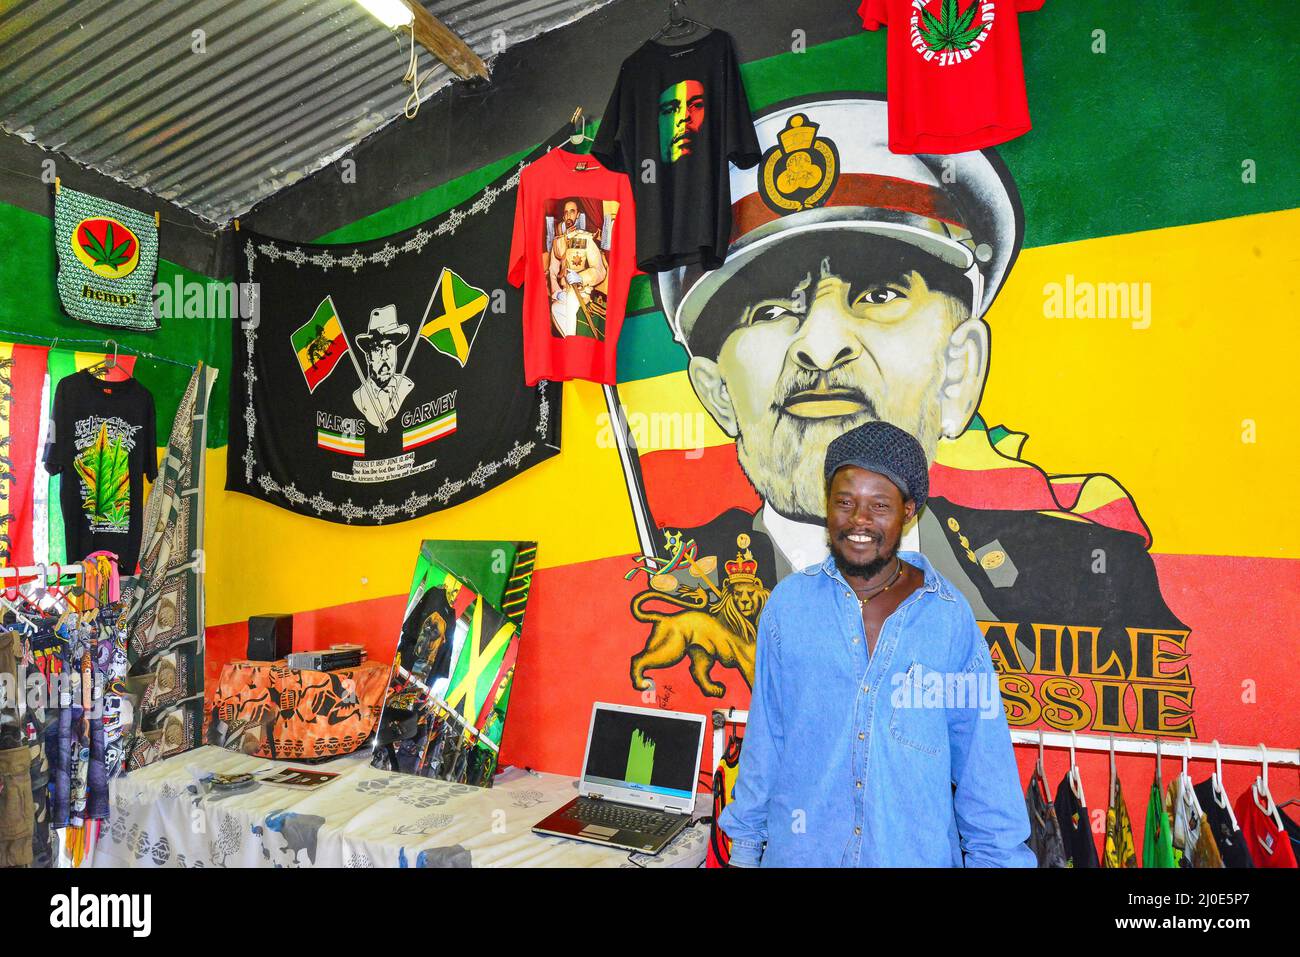 Tienda de Curiosidades, reggae etíope Hartbeespoort, Provincia del Noroeste de la República de Africa del Sur Foto de stock